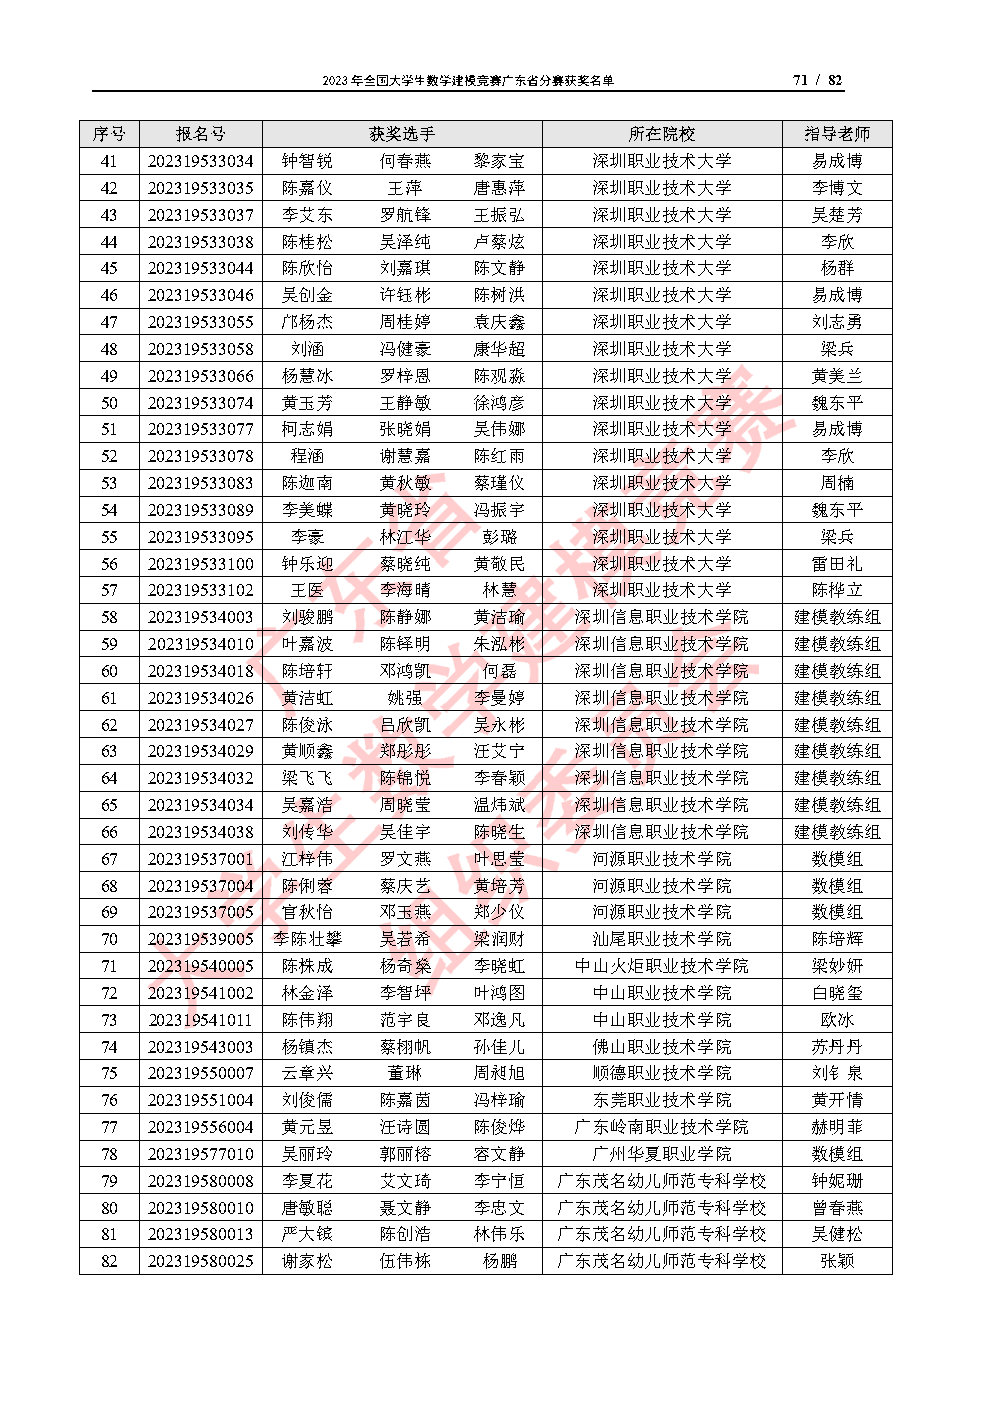 2023年全国大学生数学建模竞赛广东省分赛获奖名单_Page71.jpg